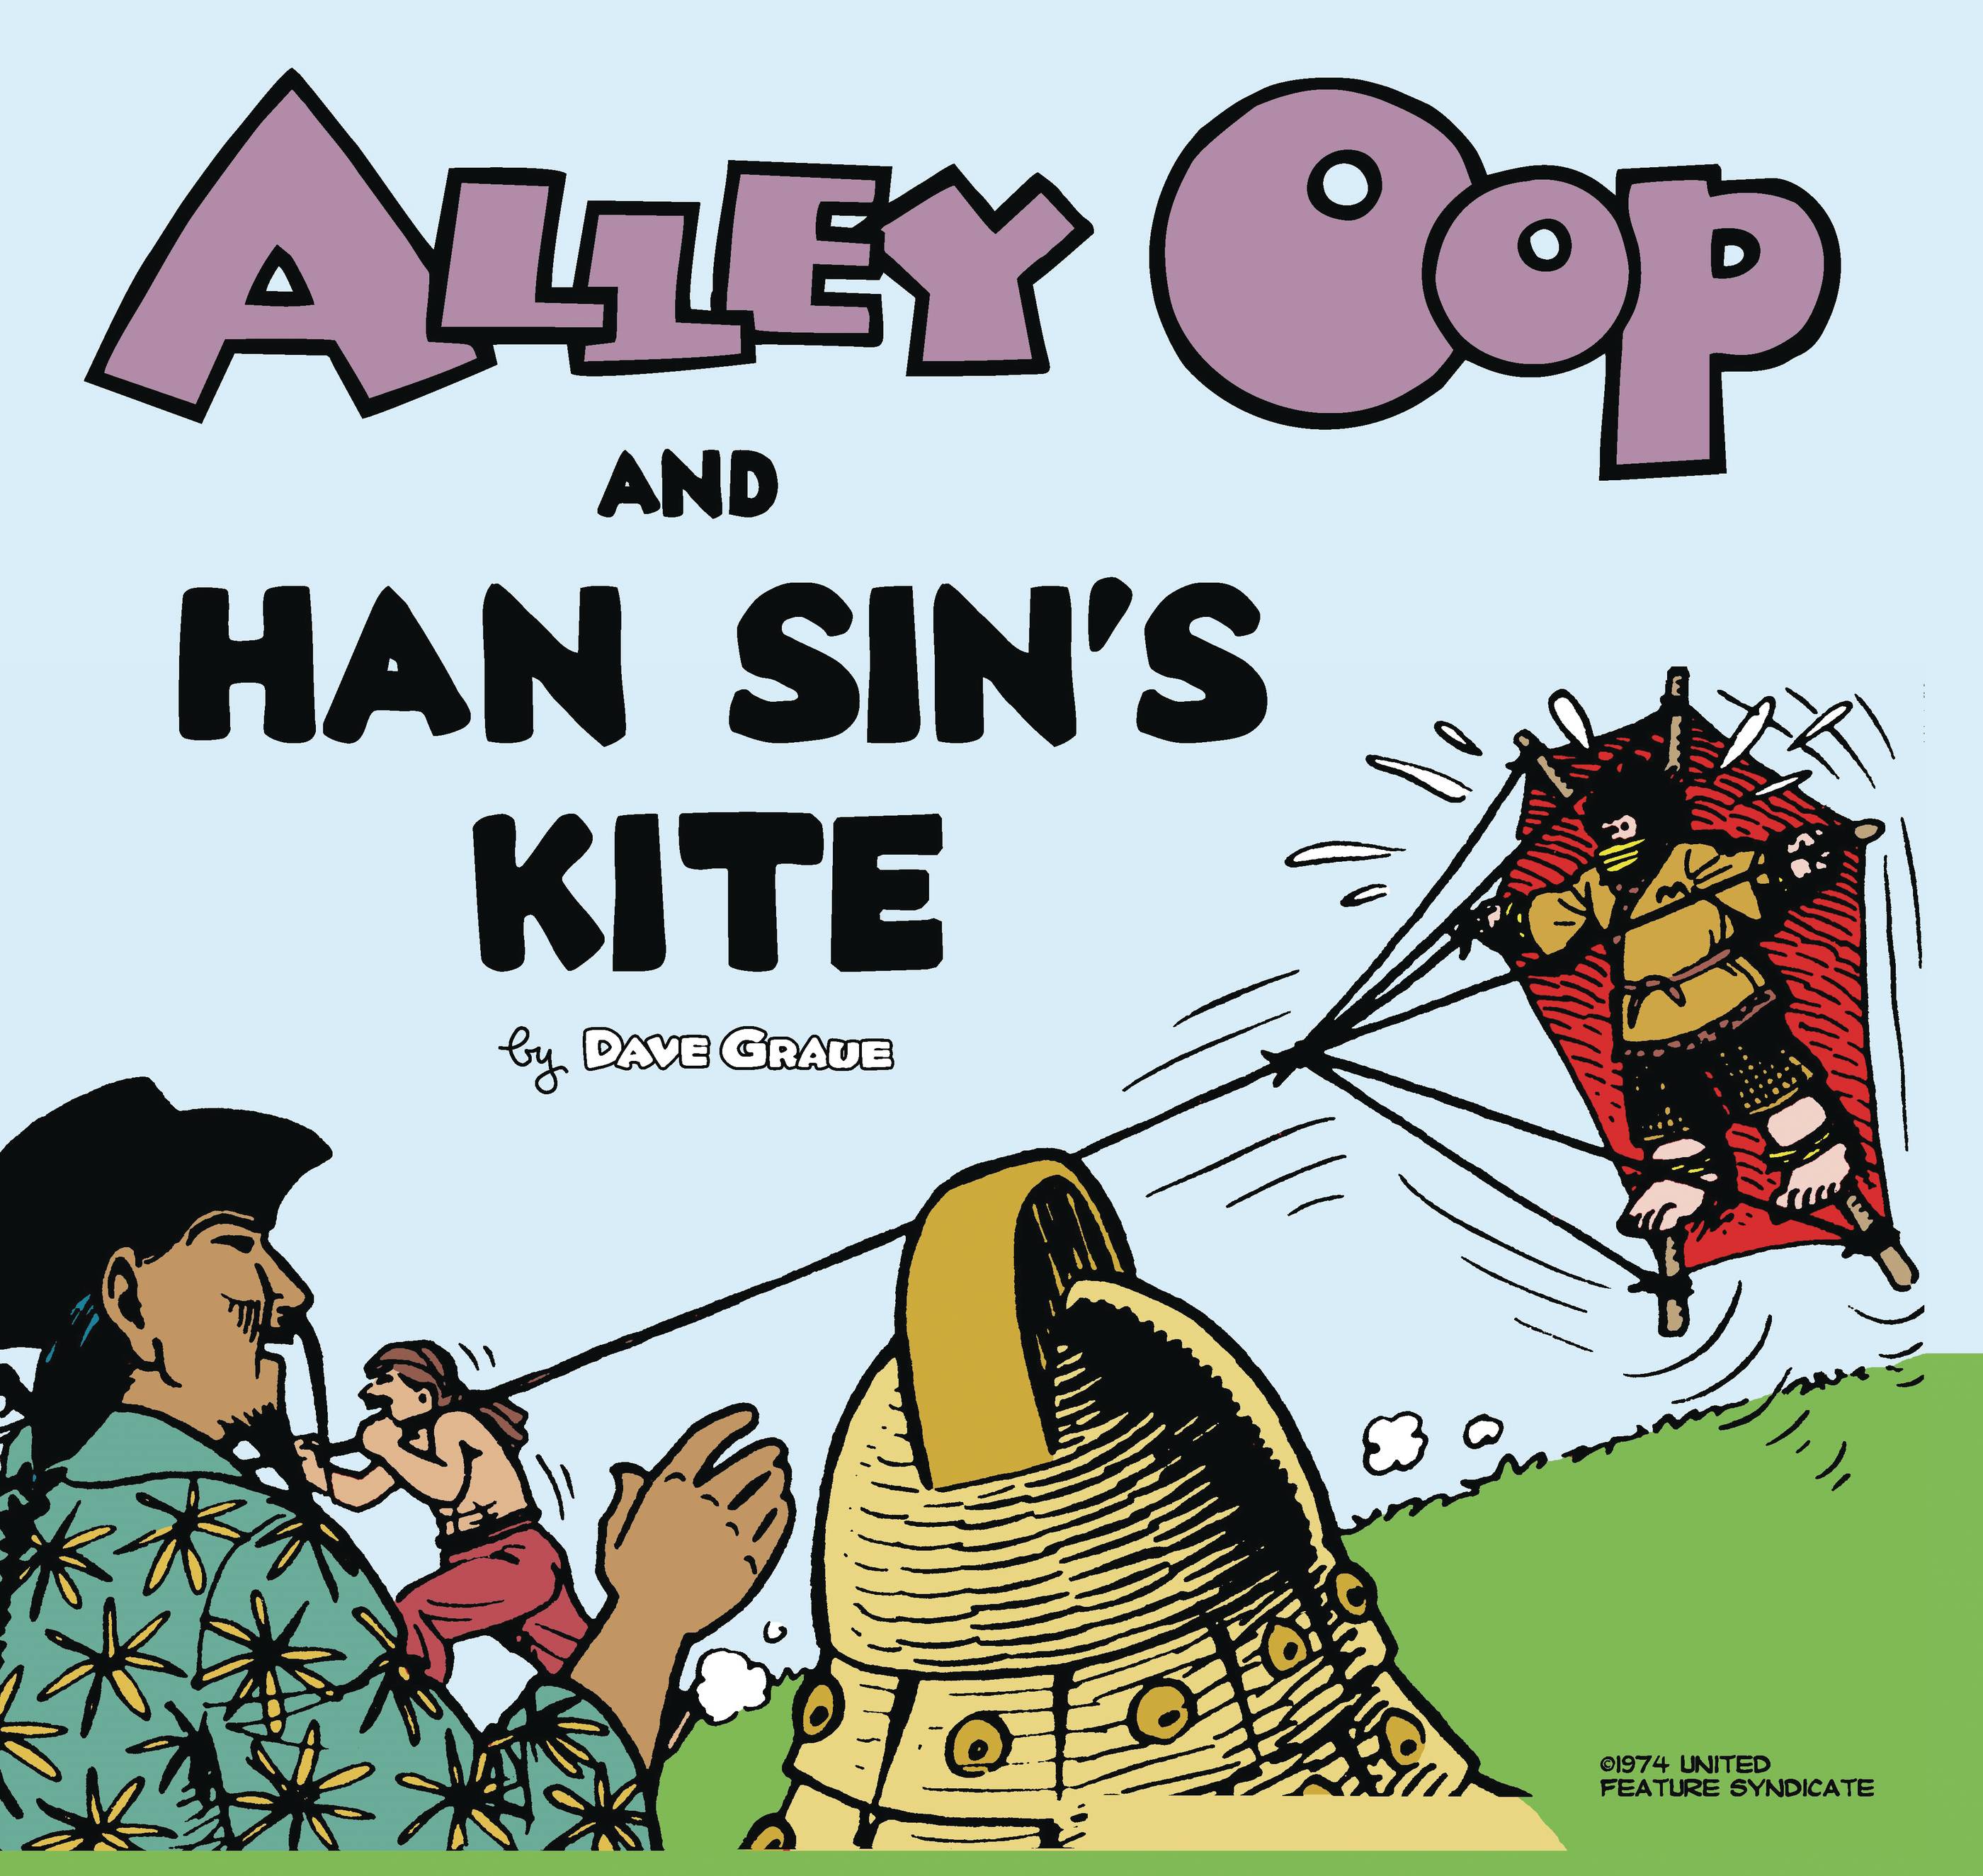 ALLEY OOP AND HAN SINS KITE